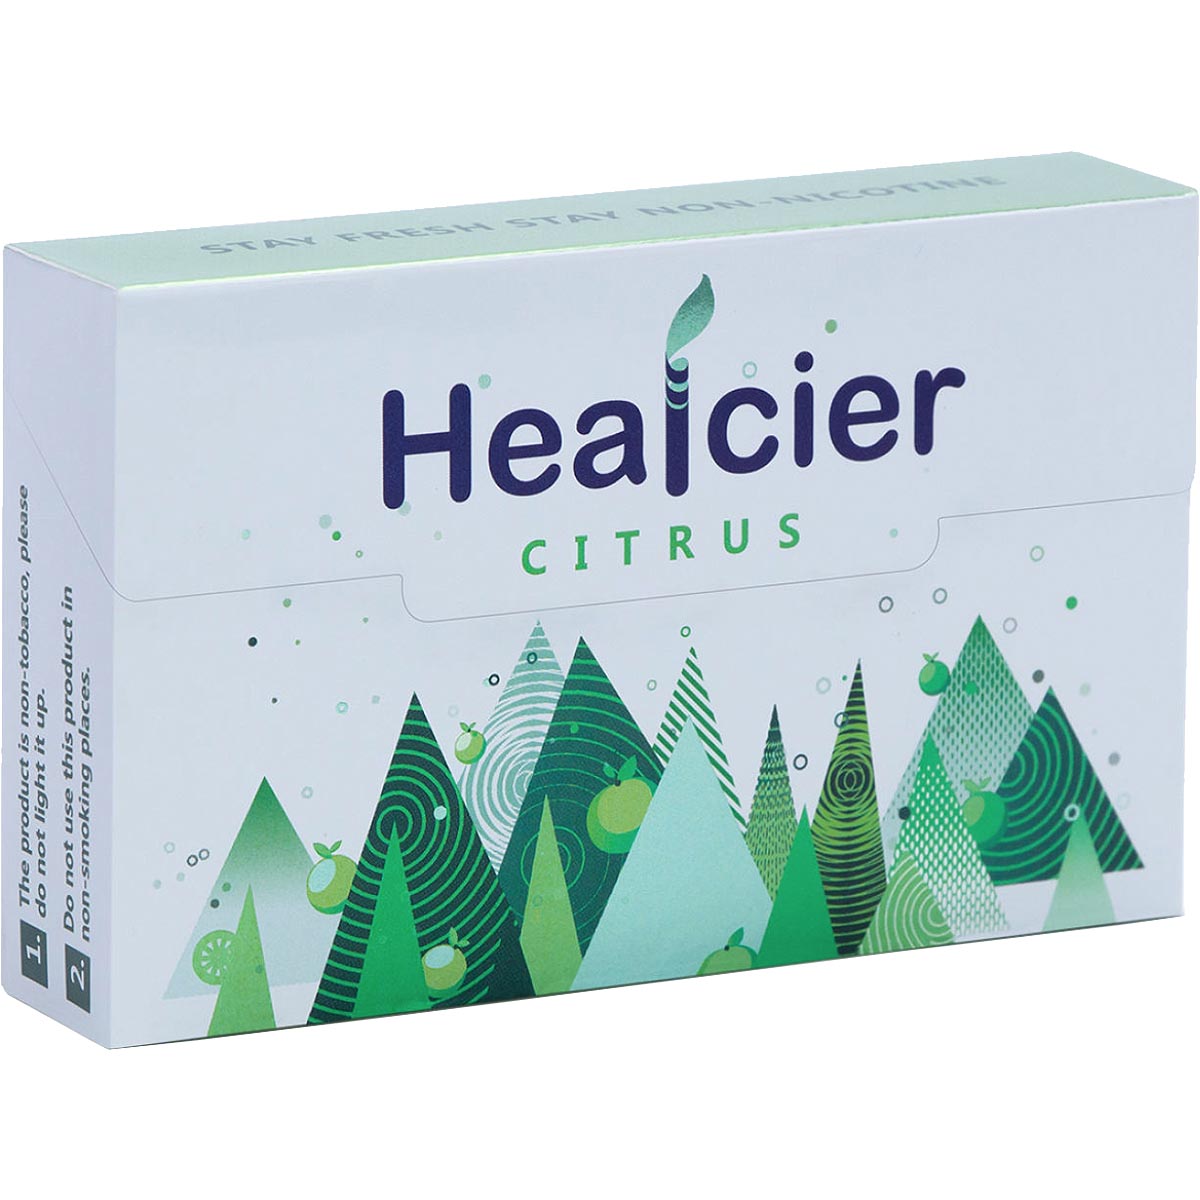 Healcier - Citrus Non-Nicotine